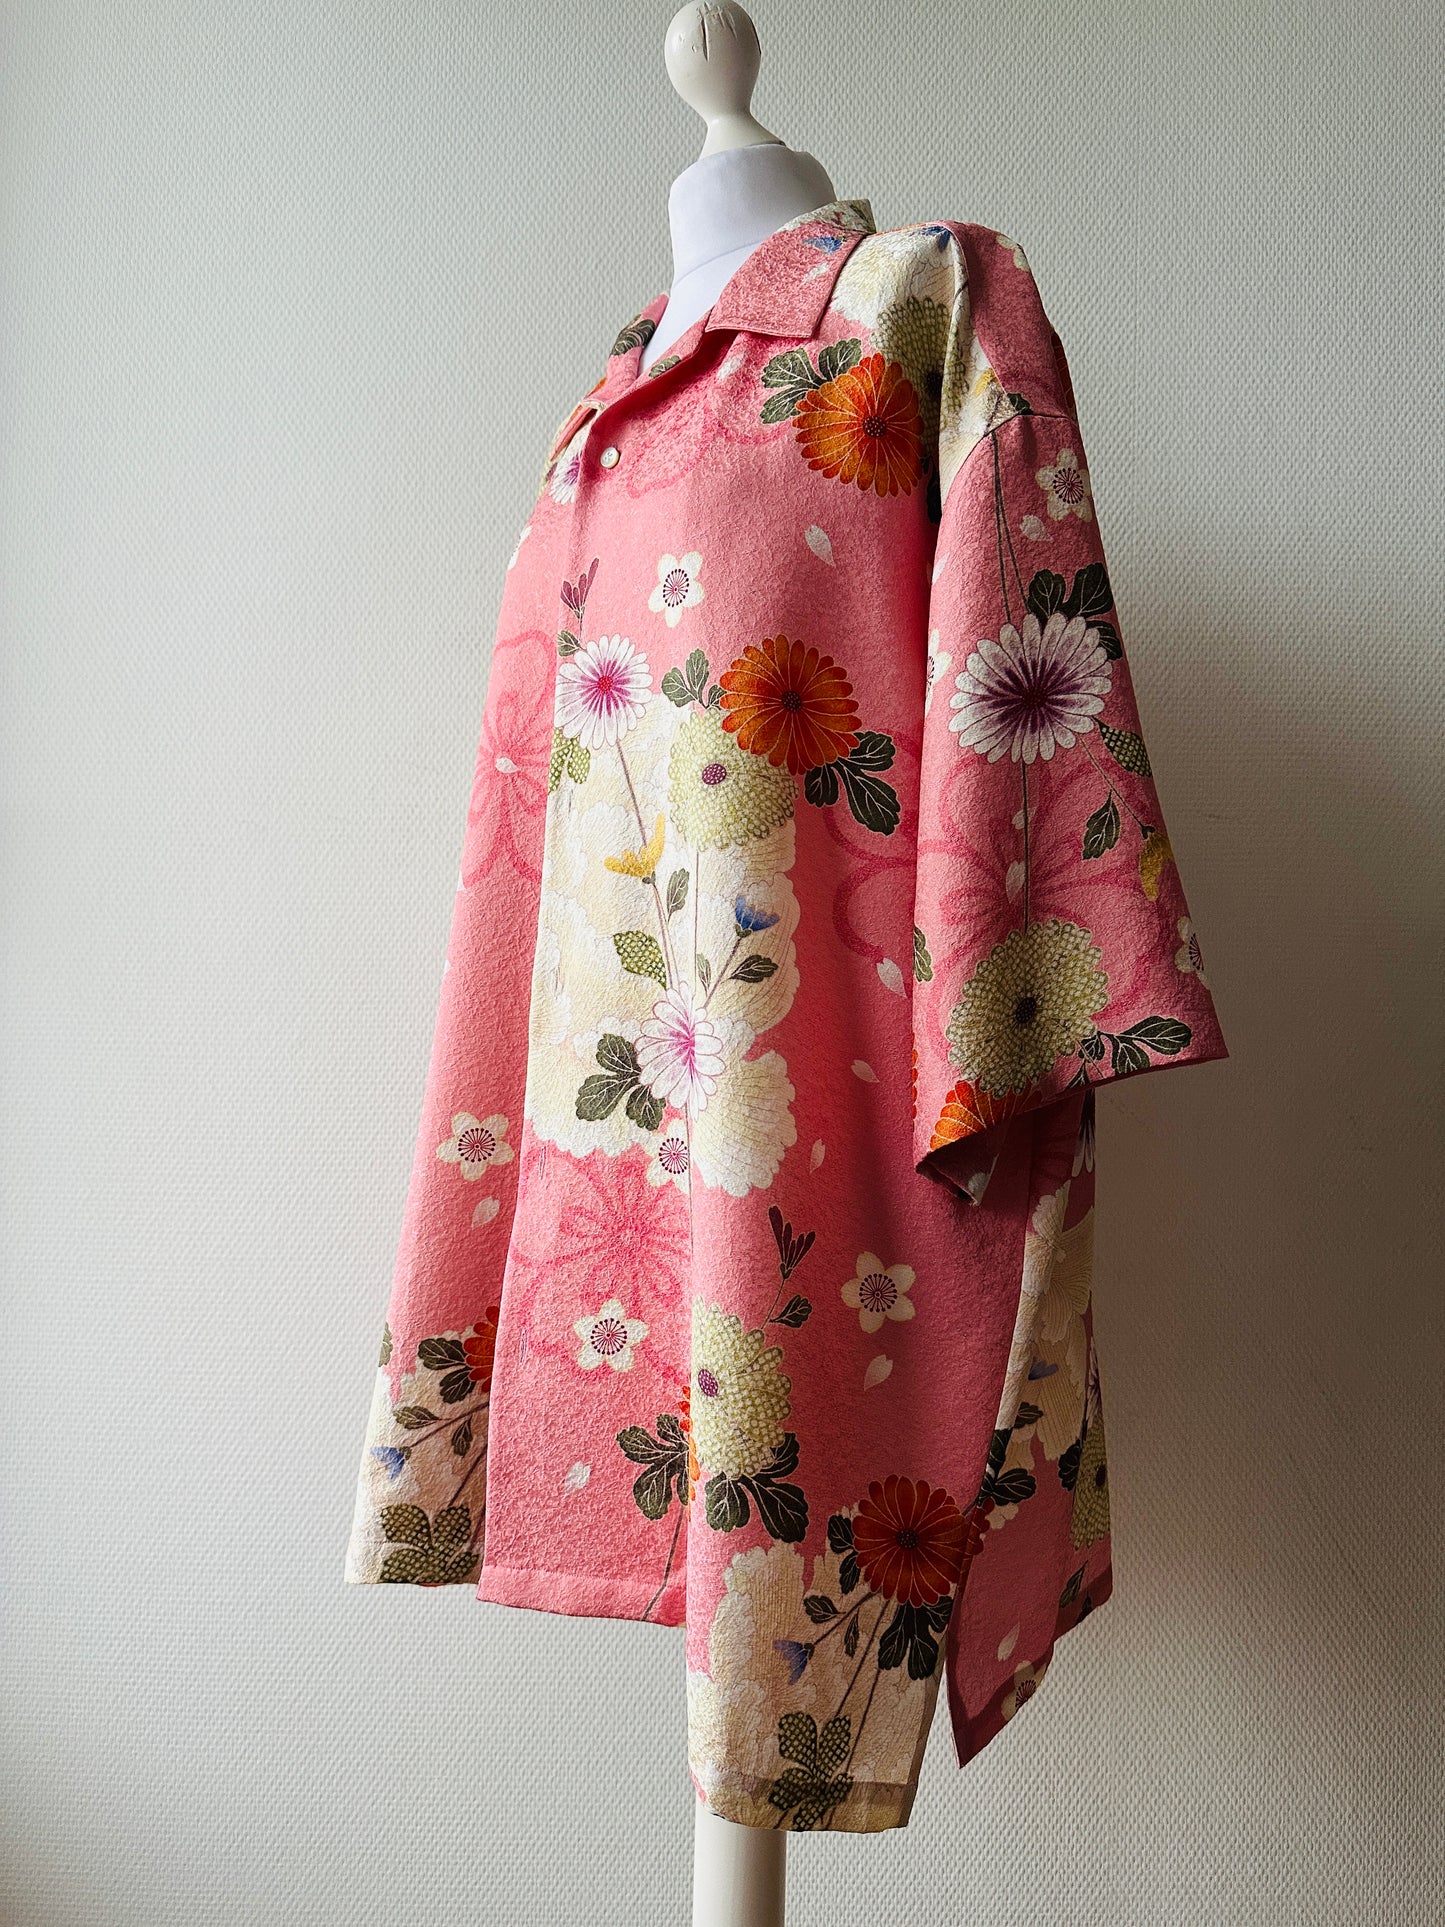 【Pink, Kirschblossom】 Hawaiianisches Hemd/Größe: 4L ＜ Neu ・ Seide ＞ Für Männer, für Frauen, japanische Kimono, Japan Unisexesische Kleidung, Unisex, japanische Geschenke, Originalartikel